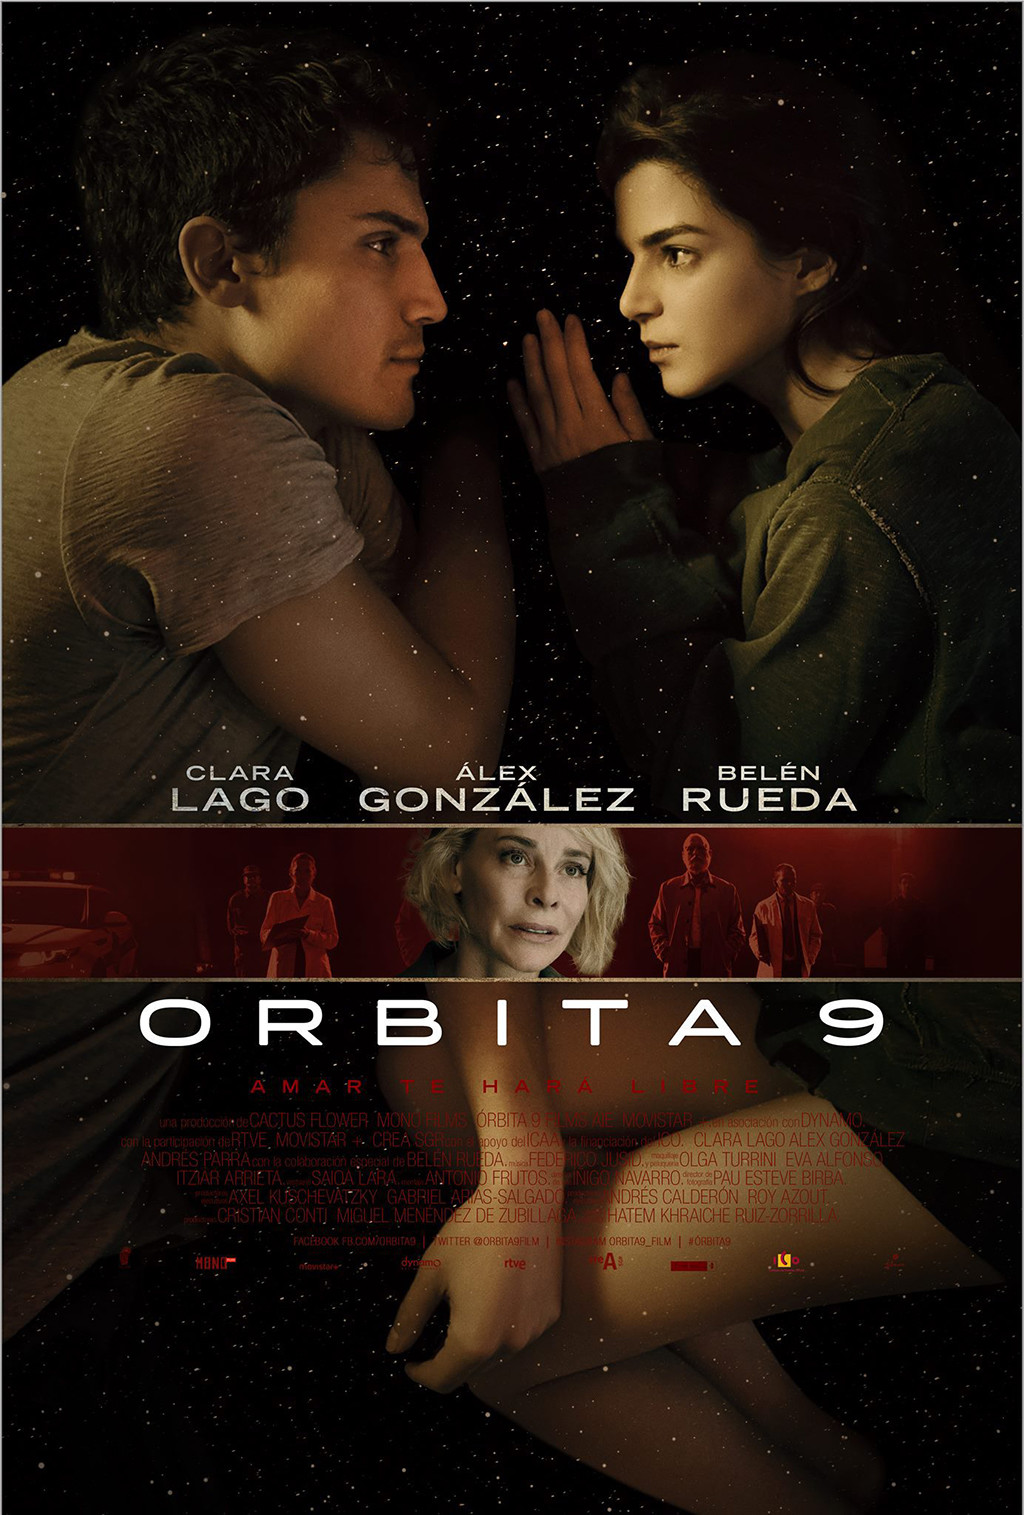 orbita9